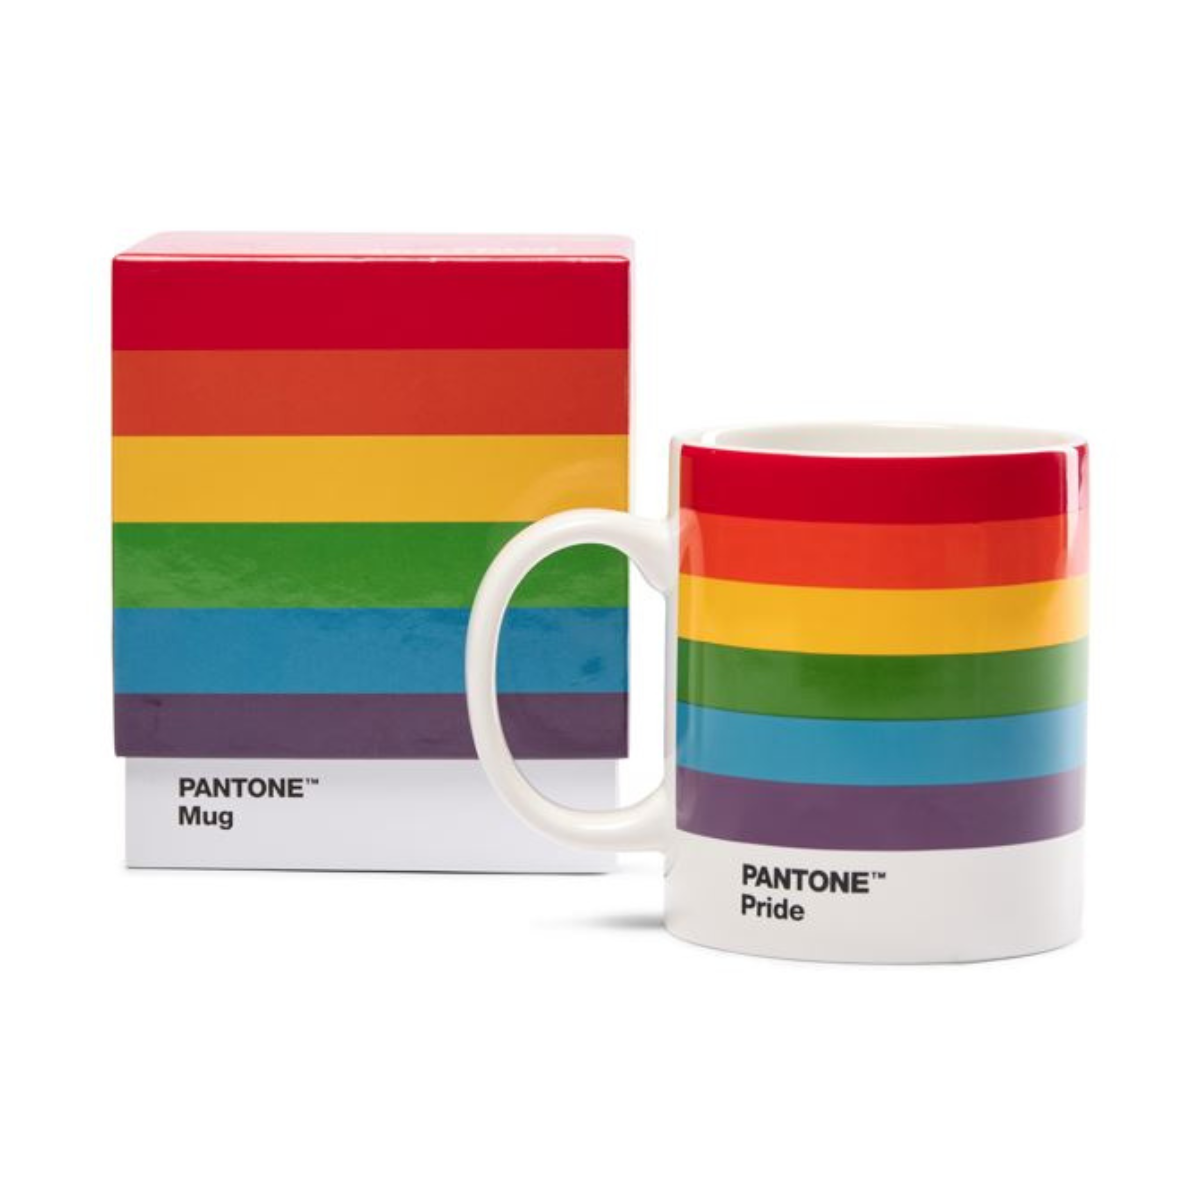 Pantone Pride Mug in Gift Box